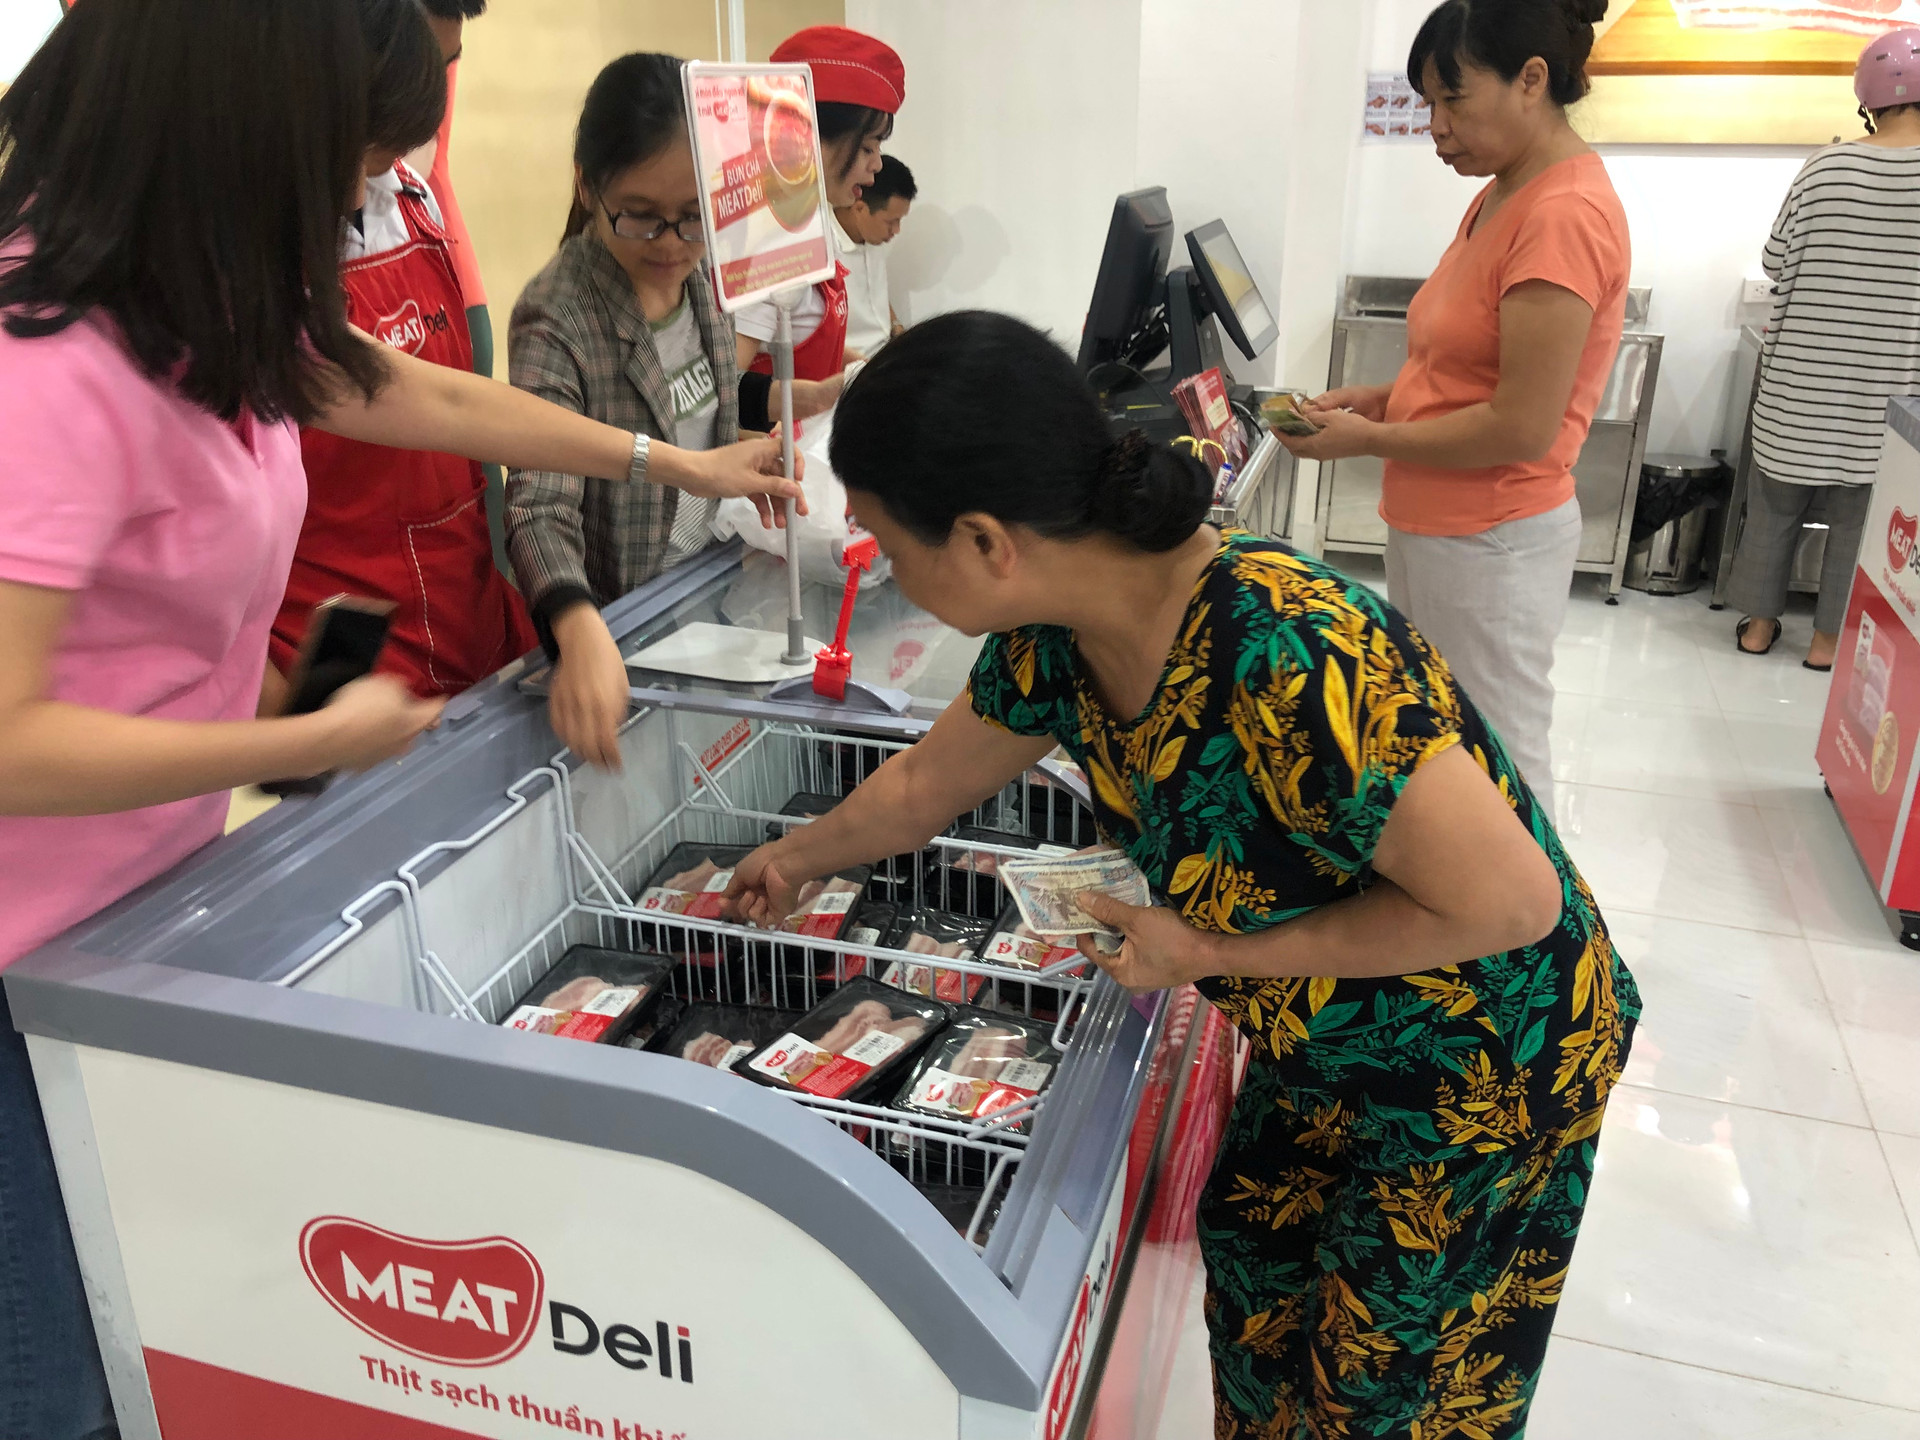 MEATDeli trở lại phục vụ người tiêu dùng Hà Nội với 3 tuyến kiểm dịch